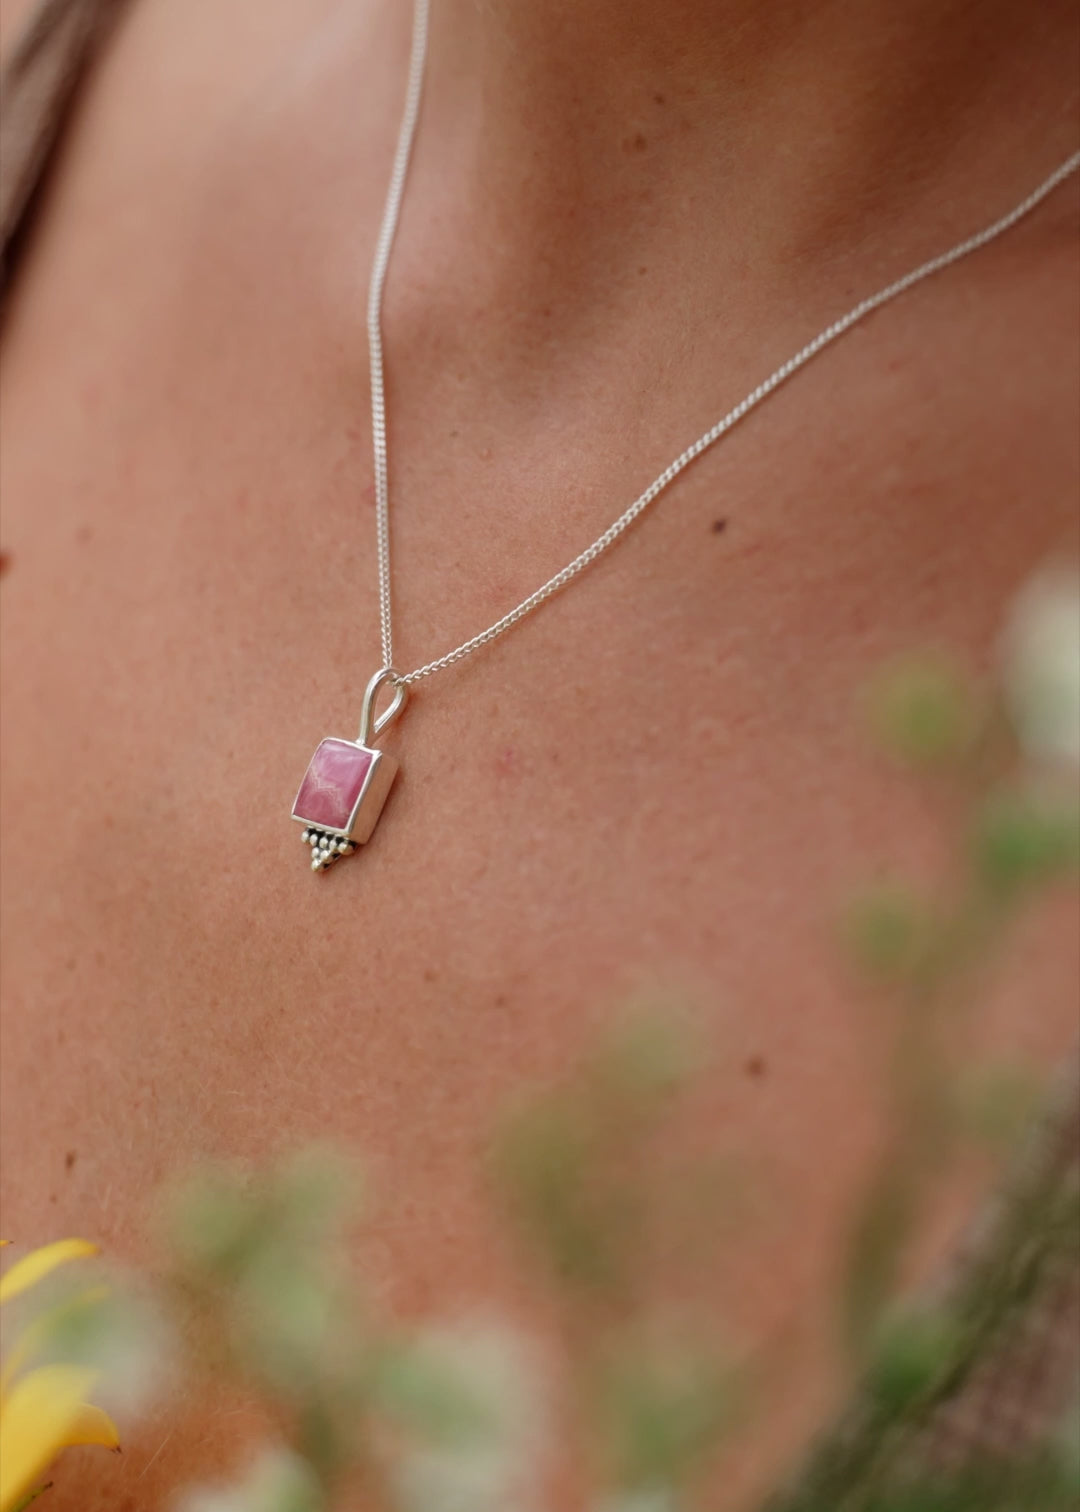 Silber Kette mit Rhodochrosit Stein | Schmuck aus Bali | VERLAN Jewellery | das perfekte Geschenk für Freundin finden | Boho Schmuck